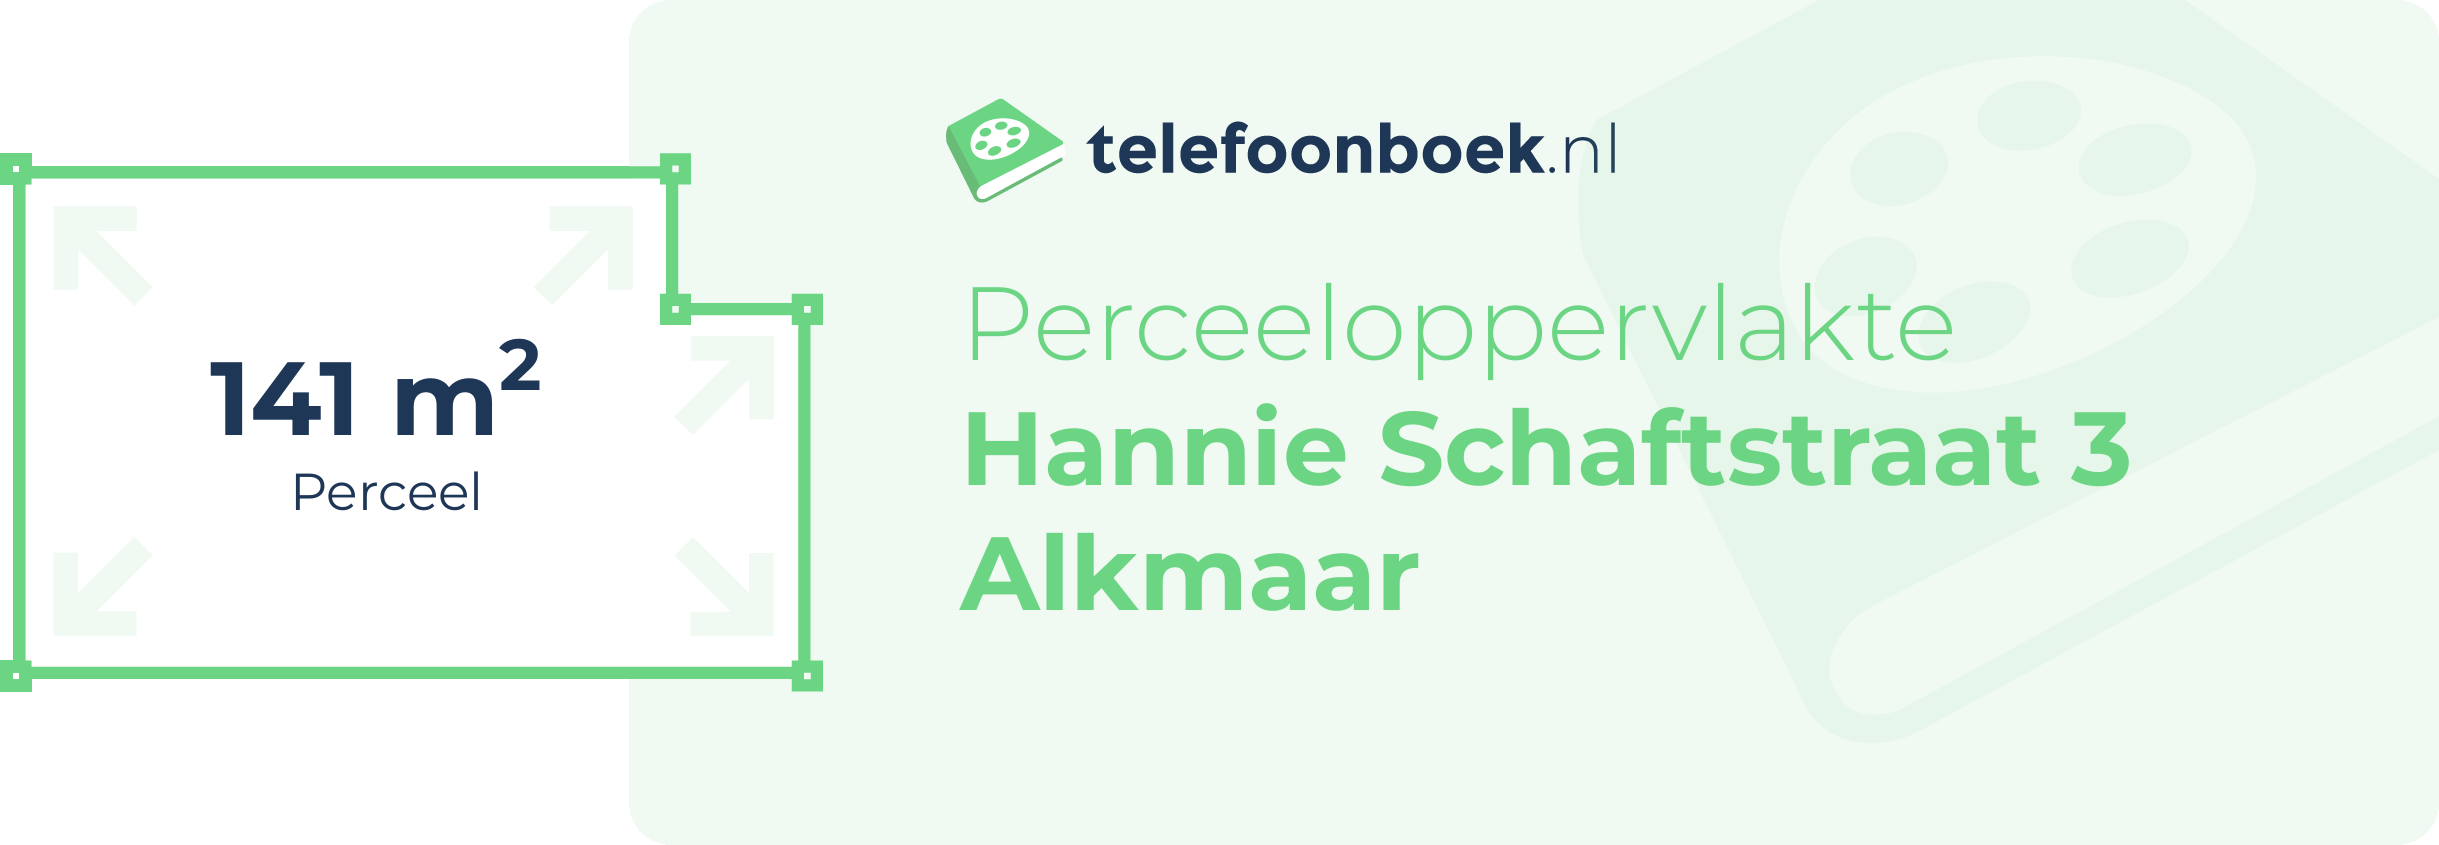 Perceeloppervlakte Hannie Schaftstraat 3 Alkmaar